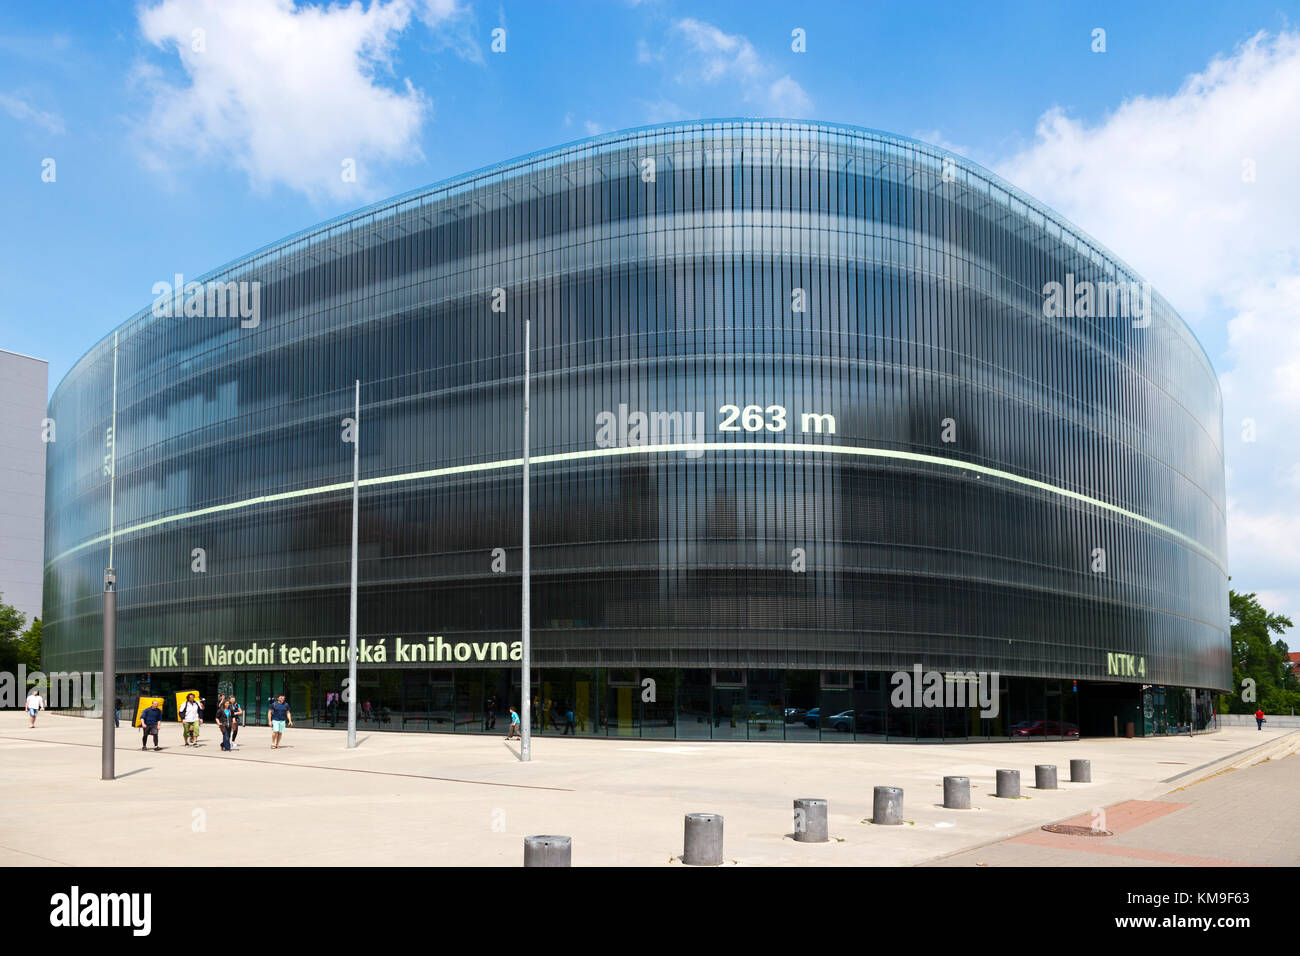 La Biblioteca Nazionale di tecnologia, distretto di Dejvice, Praga, repubblica Ceca - Gran Premio di architettura Foto Stock